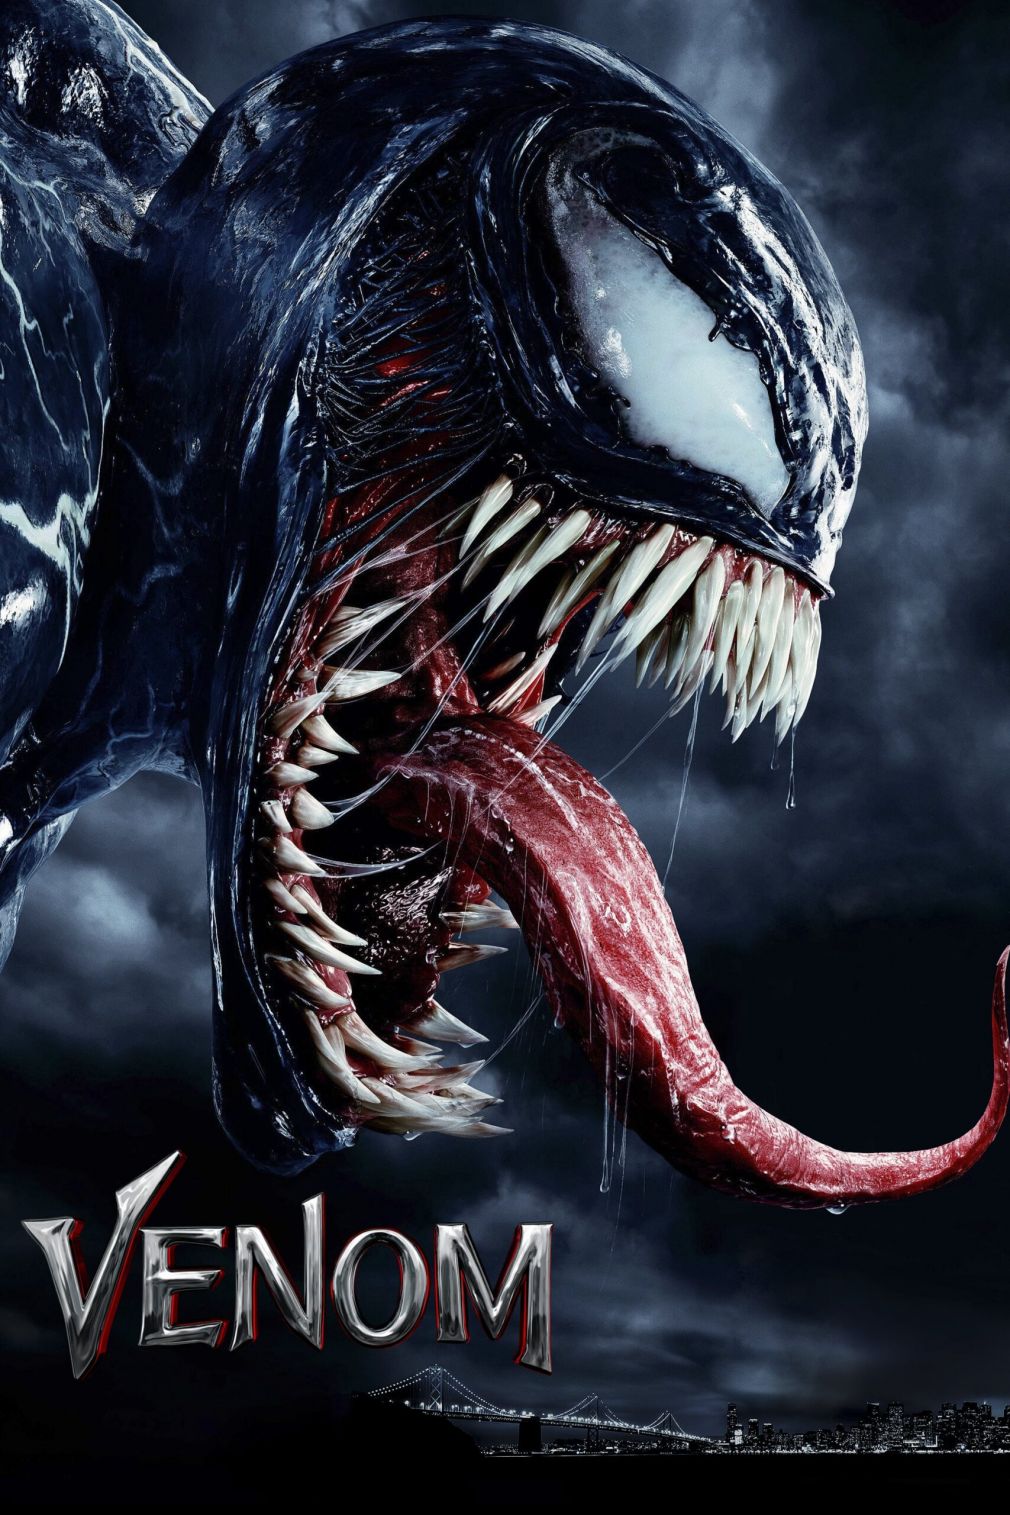 Tom Hardy visszatér a mozivászonra a halálos védelmező Venom szerepében, aki a MARVEL egyik legnagyobb és legösszetettebb karaktere